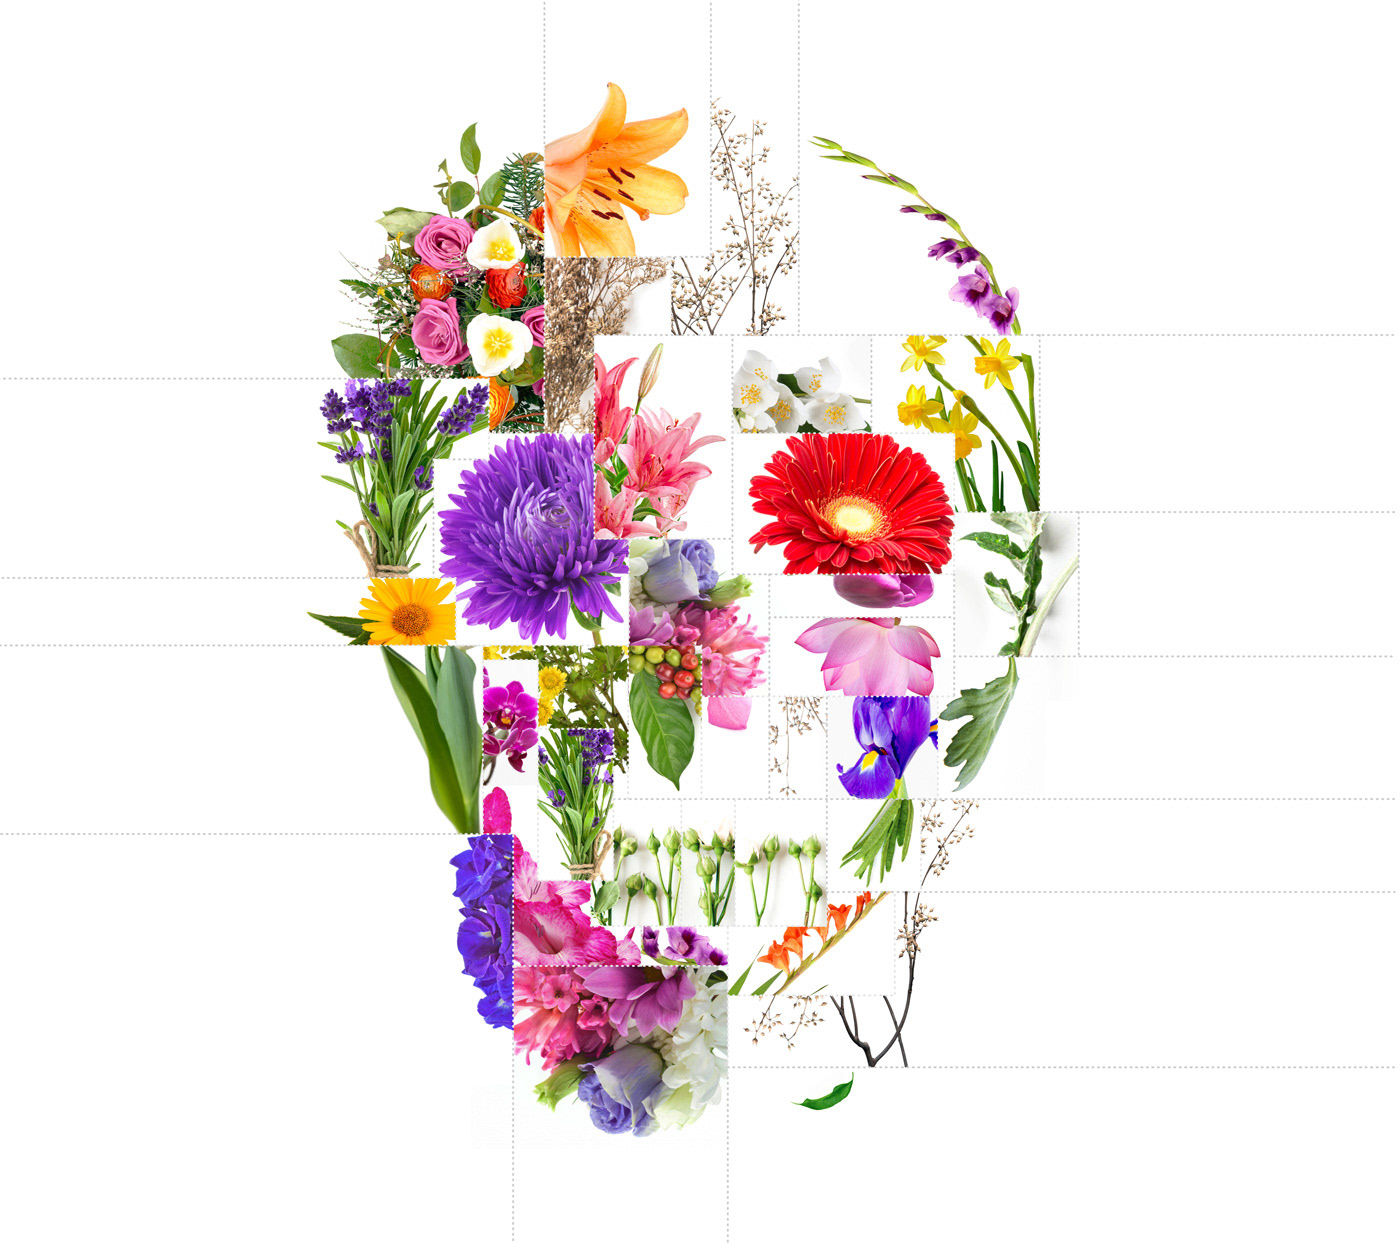 art collage death floral flower Flowers life poster rose skull